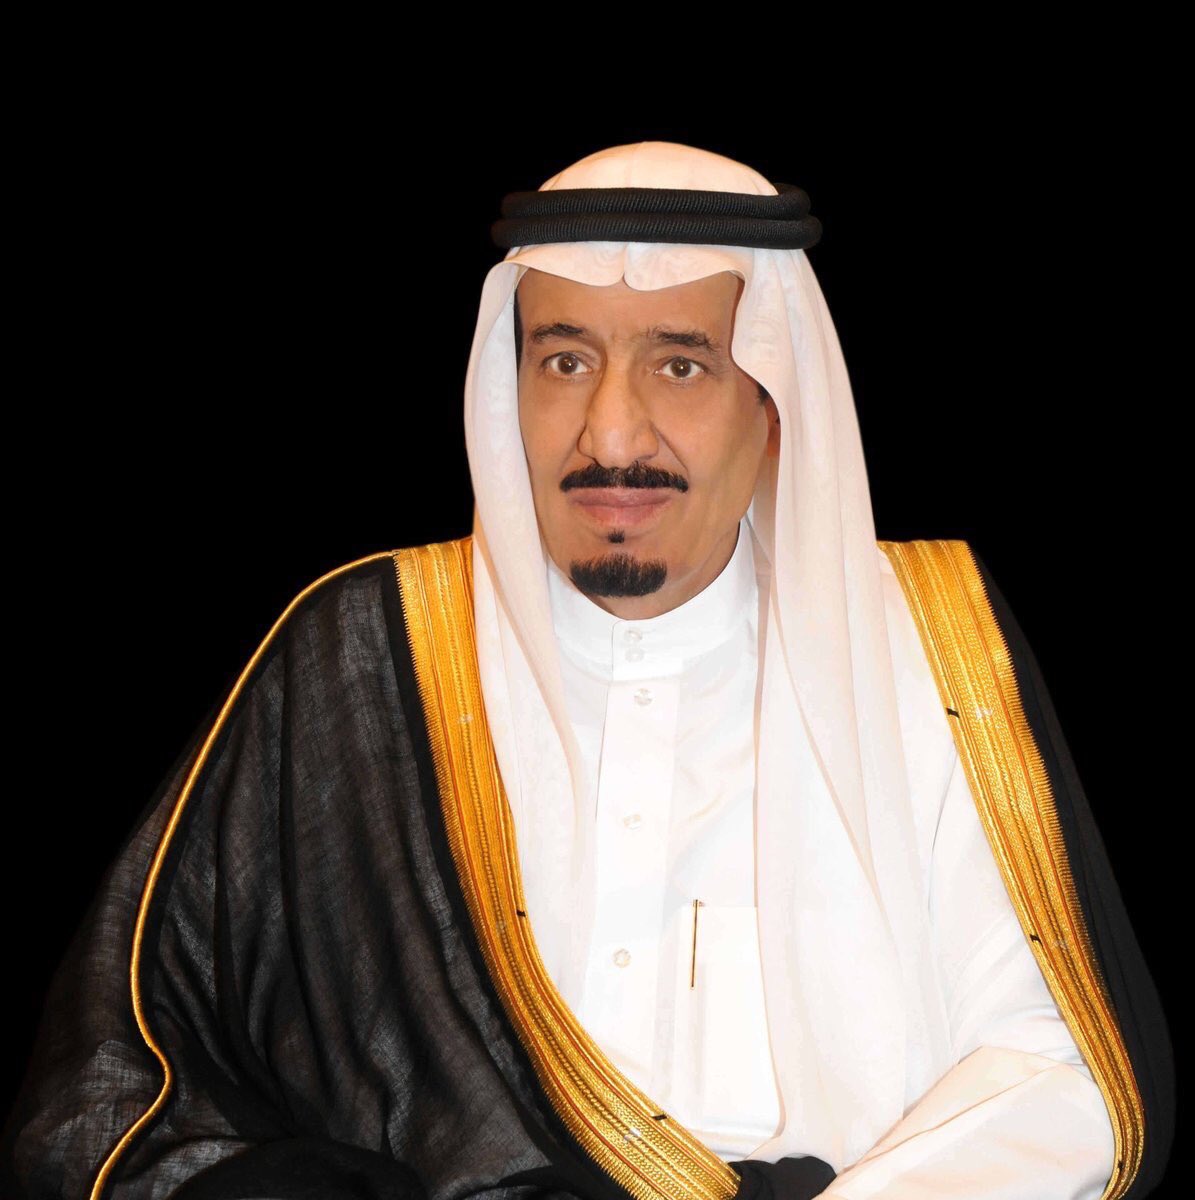 أنطلاق فعاليات مهرجان الملك عبدالعزيز للإبل في نسخته الرابعة